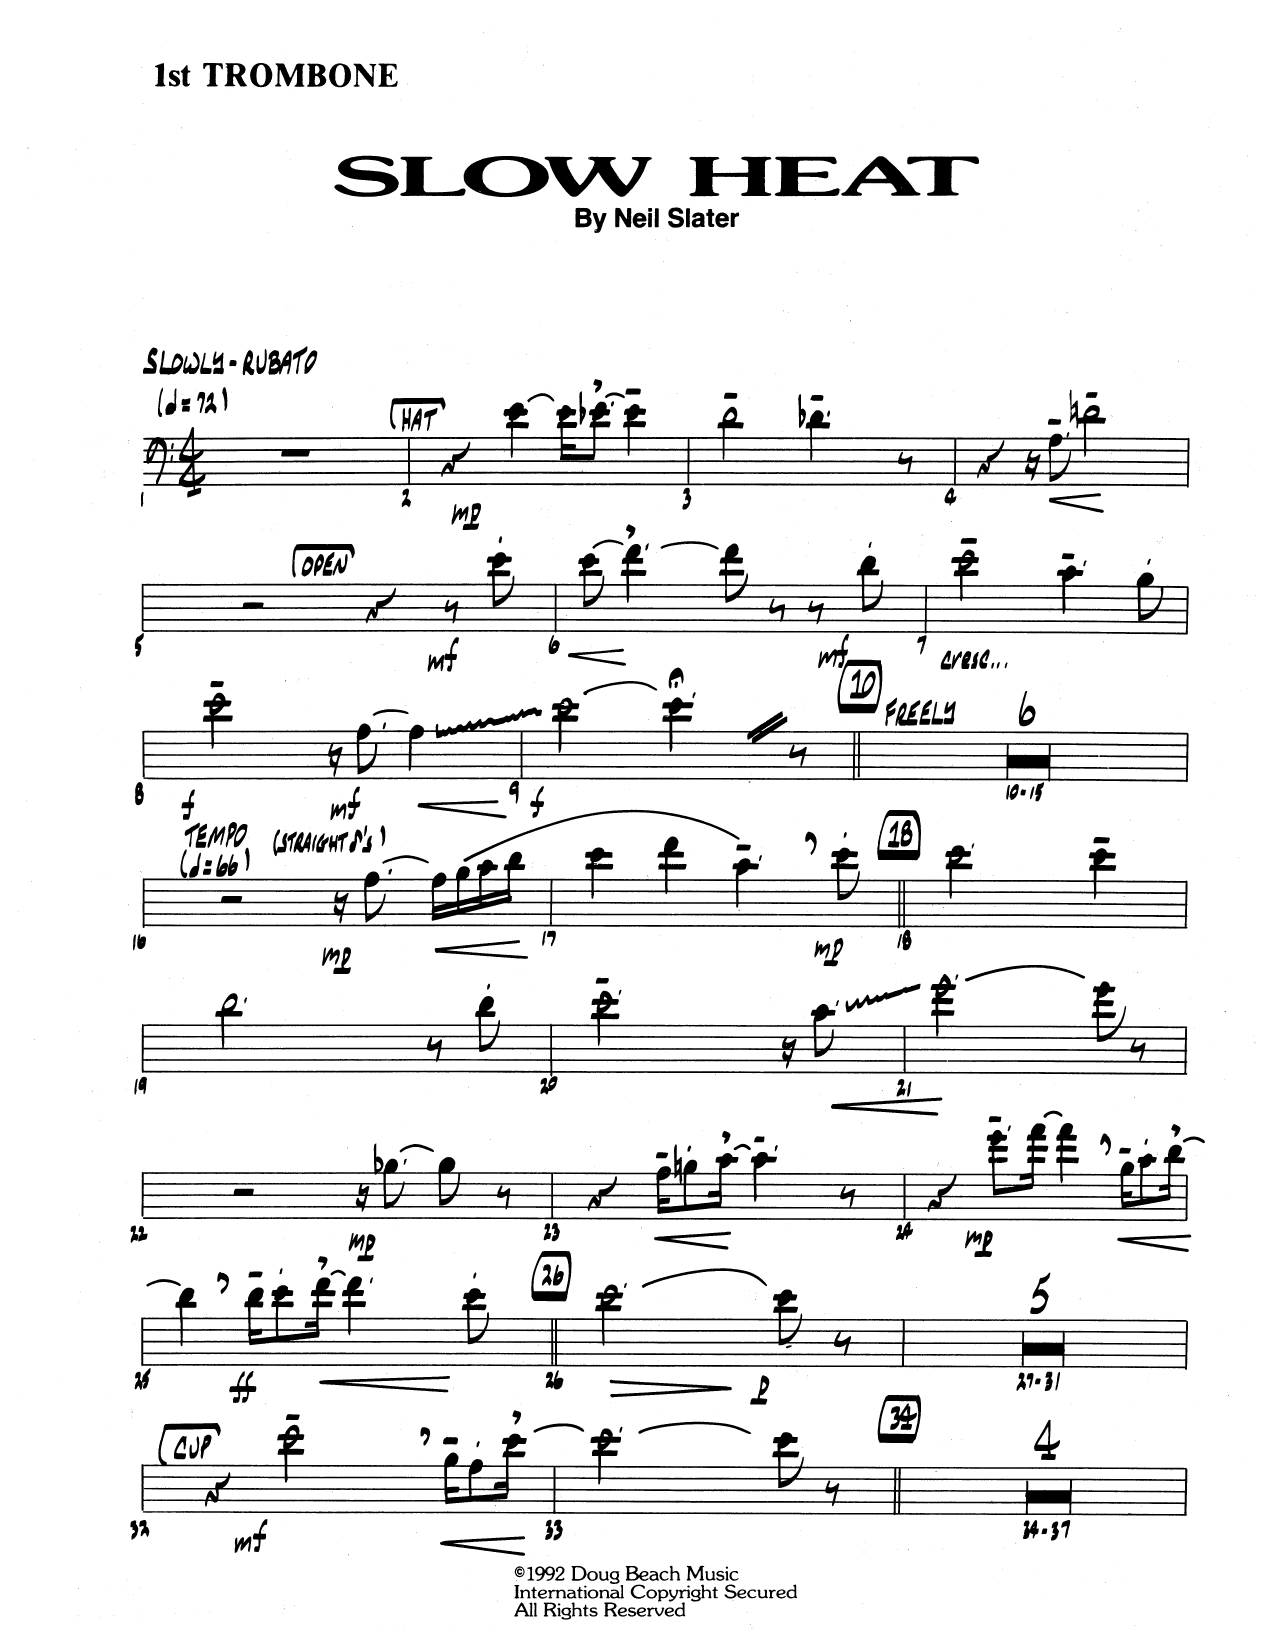 Download Neil Slater Slow Heat - 1st Trombone Sheet Music